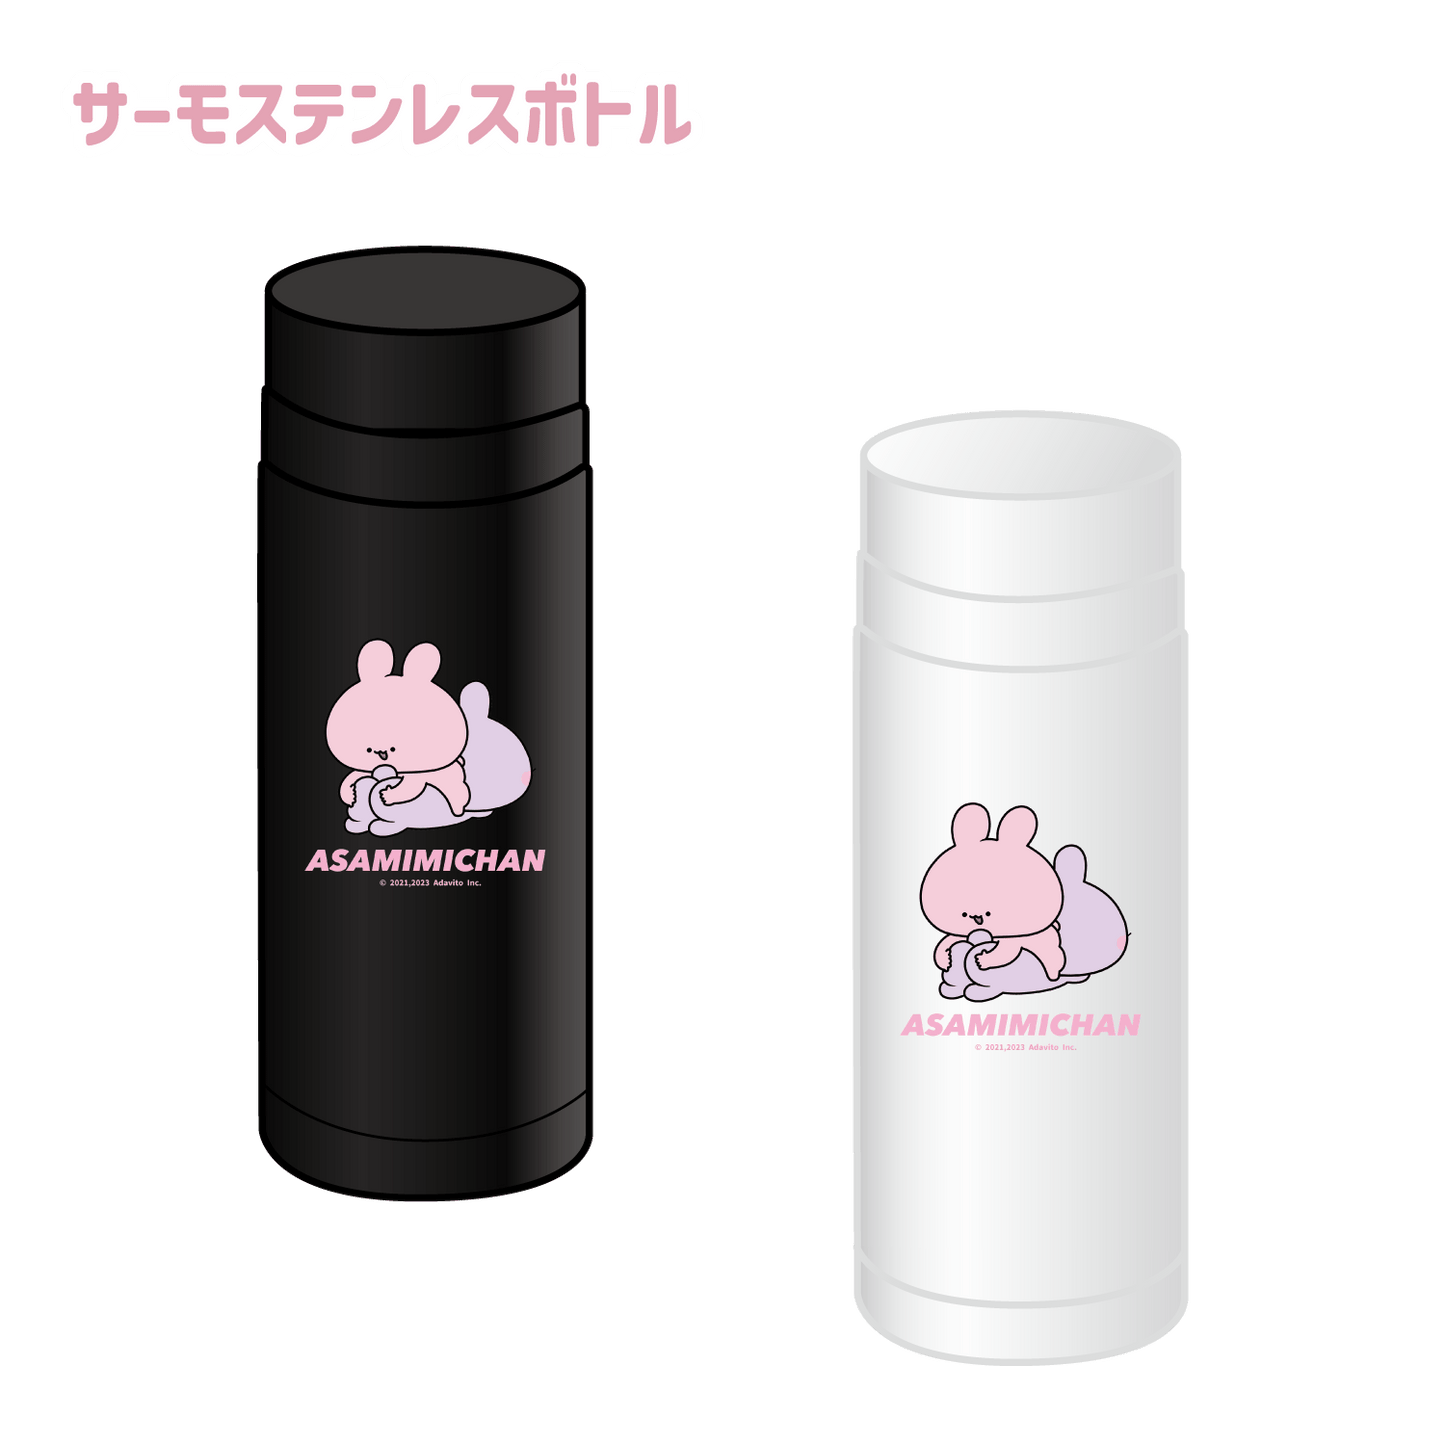 [Asamimi-chan] Bottiglia termica in acciaio inossidabile (Asamimi BASIC maggio) [Spedito a metà luglio]